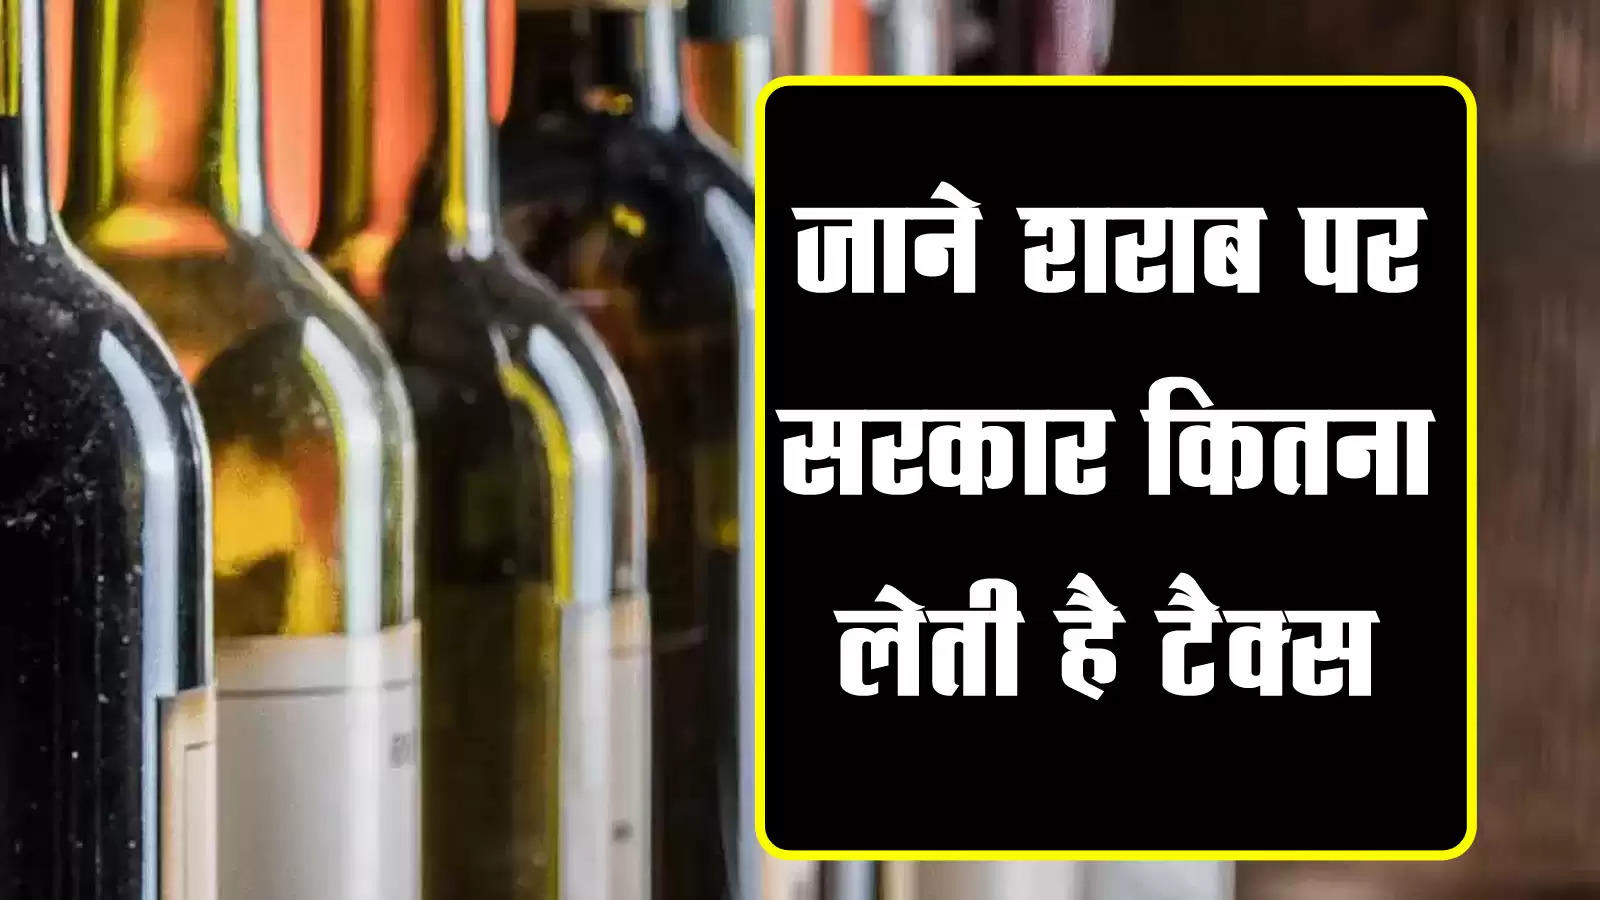 सरकार की आय का लगभग 15 फीसदी हिस्‍सा शराब की कमाई से आता है, जाने शराब पर सरकार कितना लेती है टैक्स